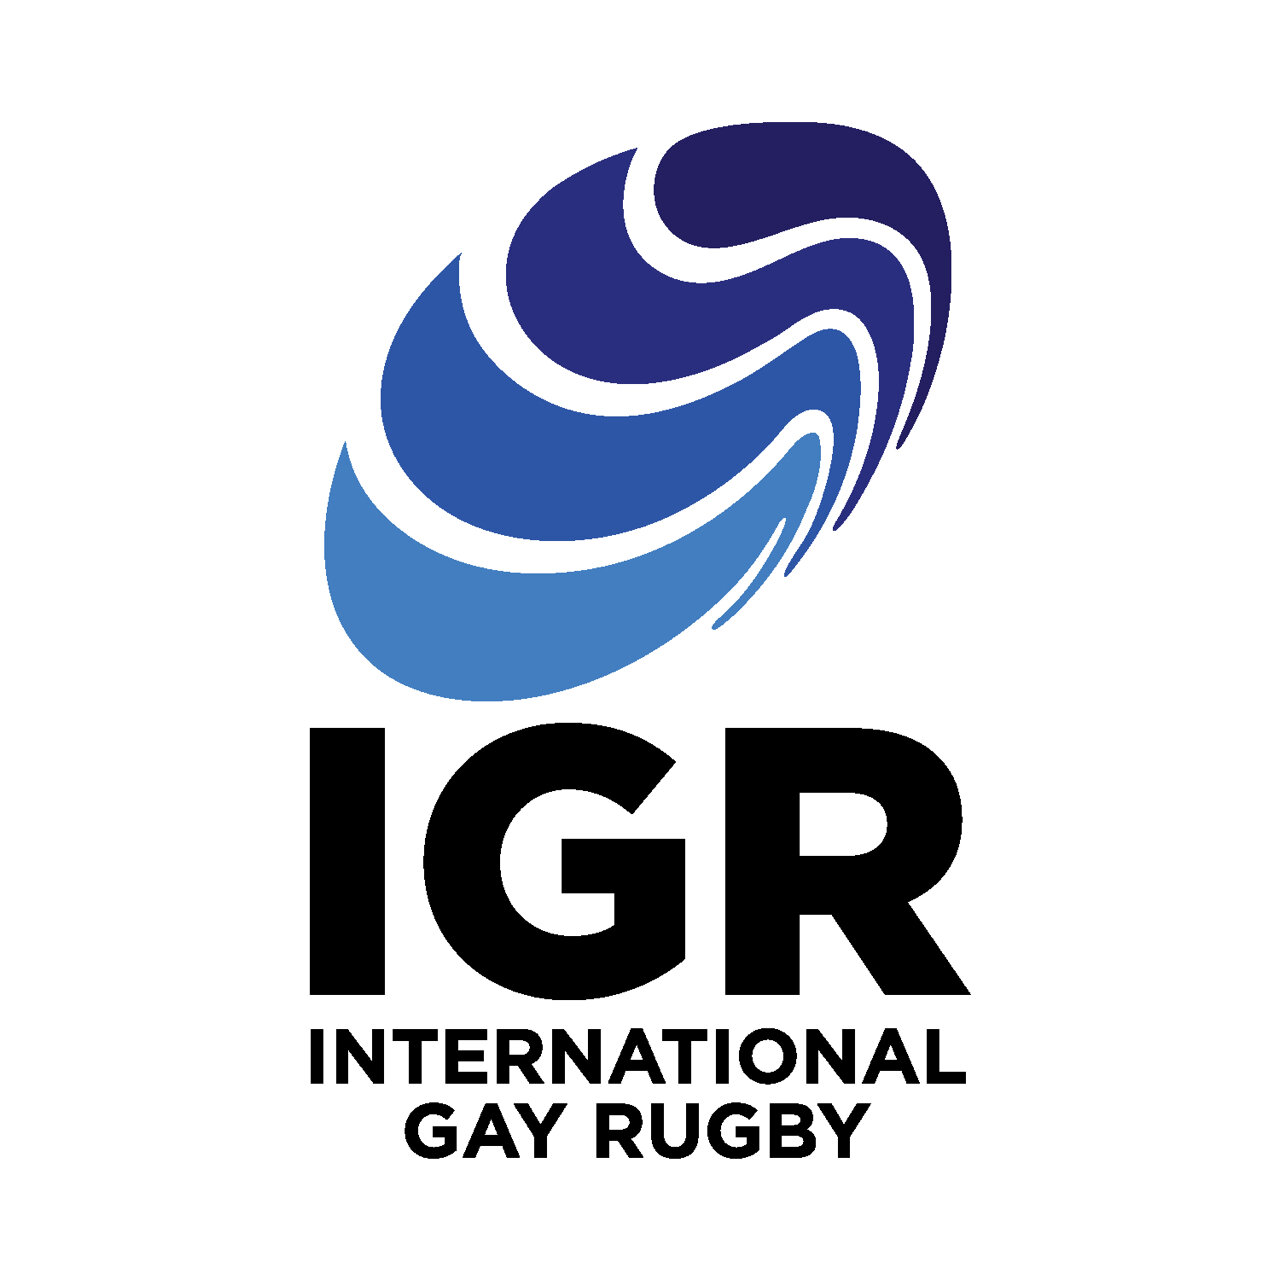 International Gay Rugby